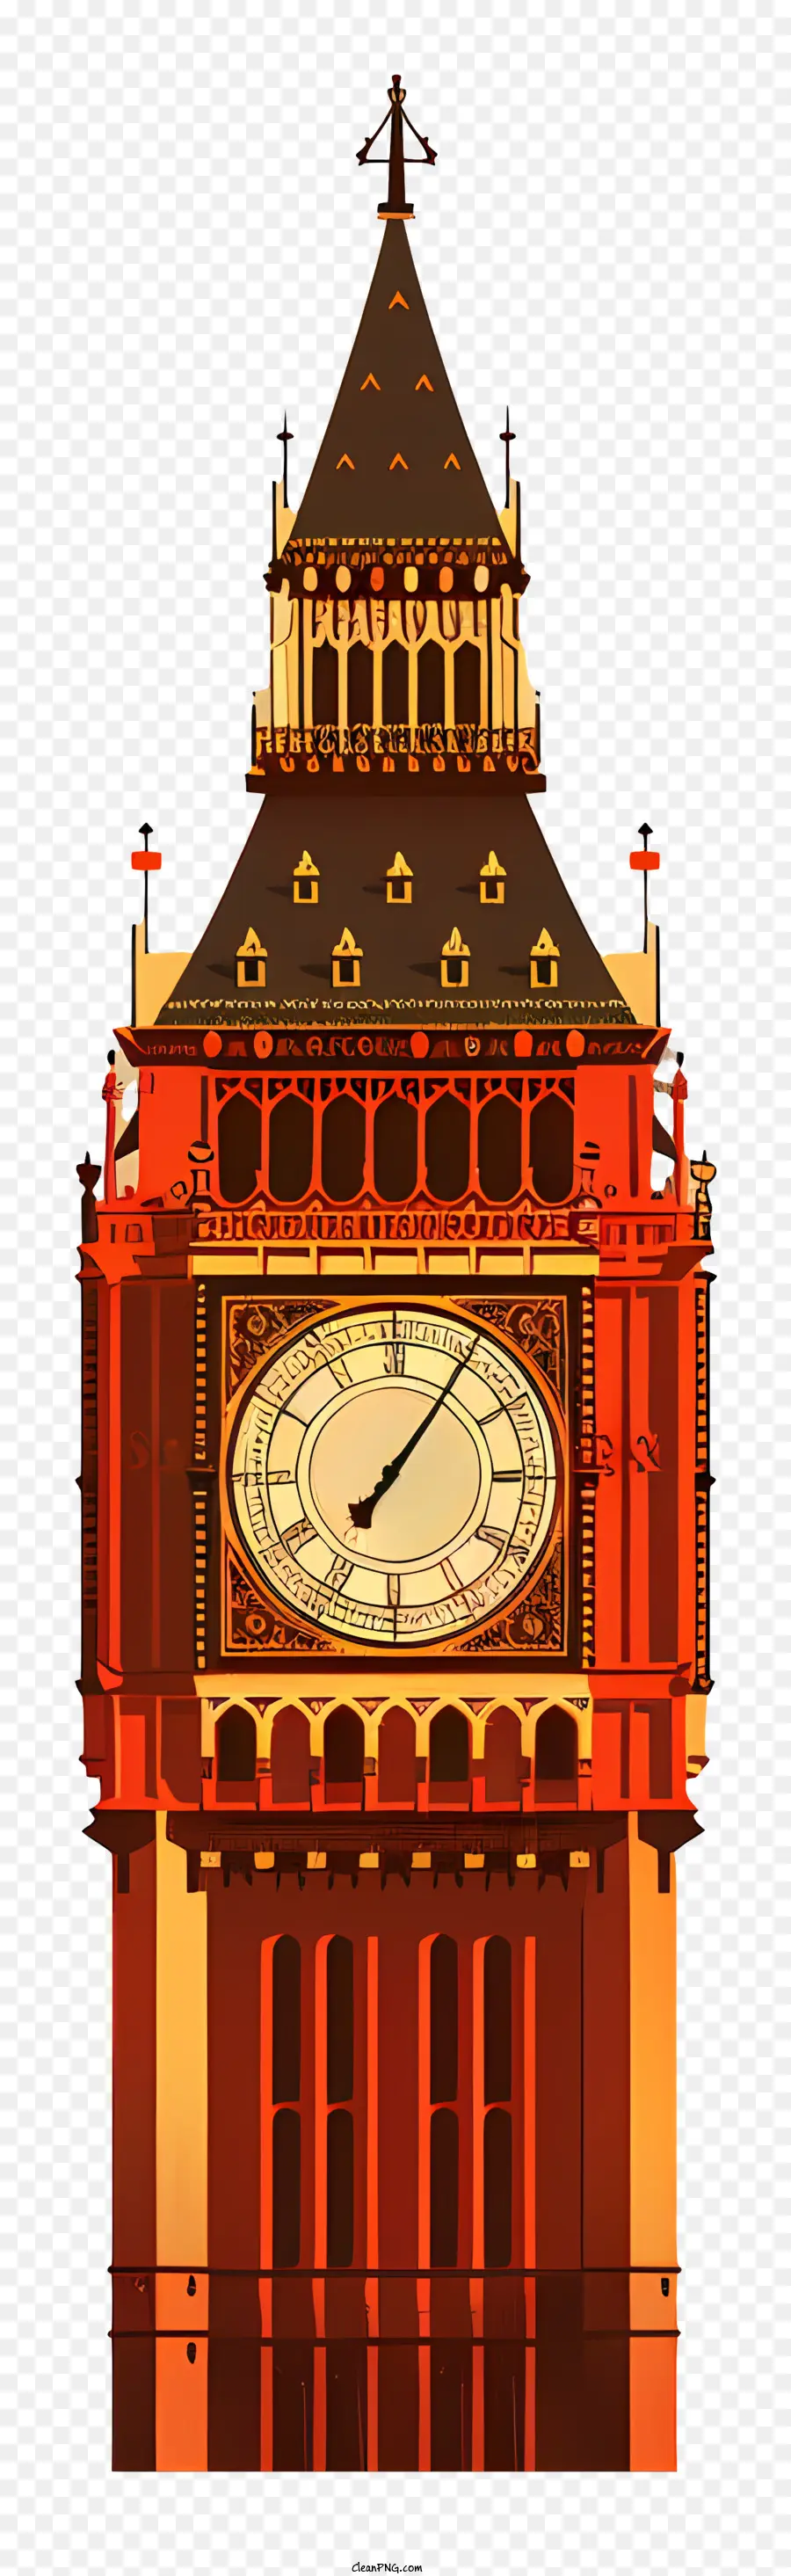 Big Ben - Grand Gothic Clock Tower mit detailliertem Mauerwerk